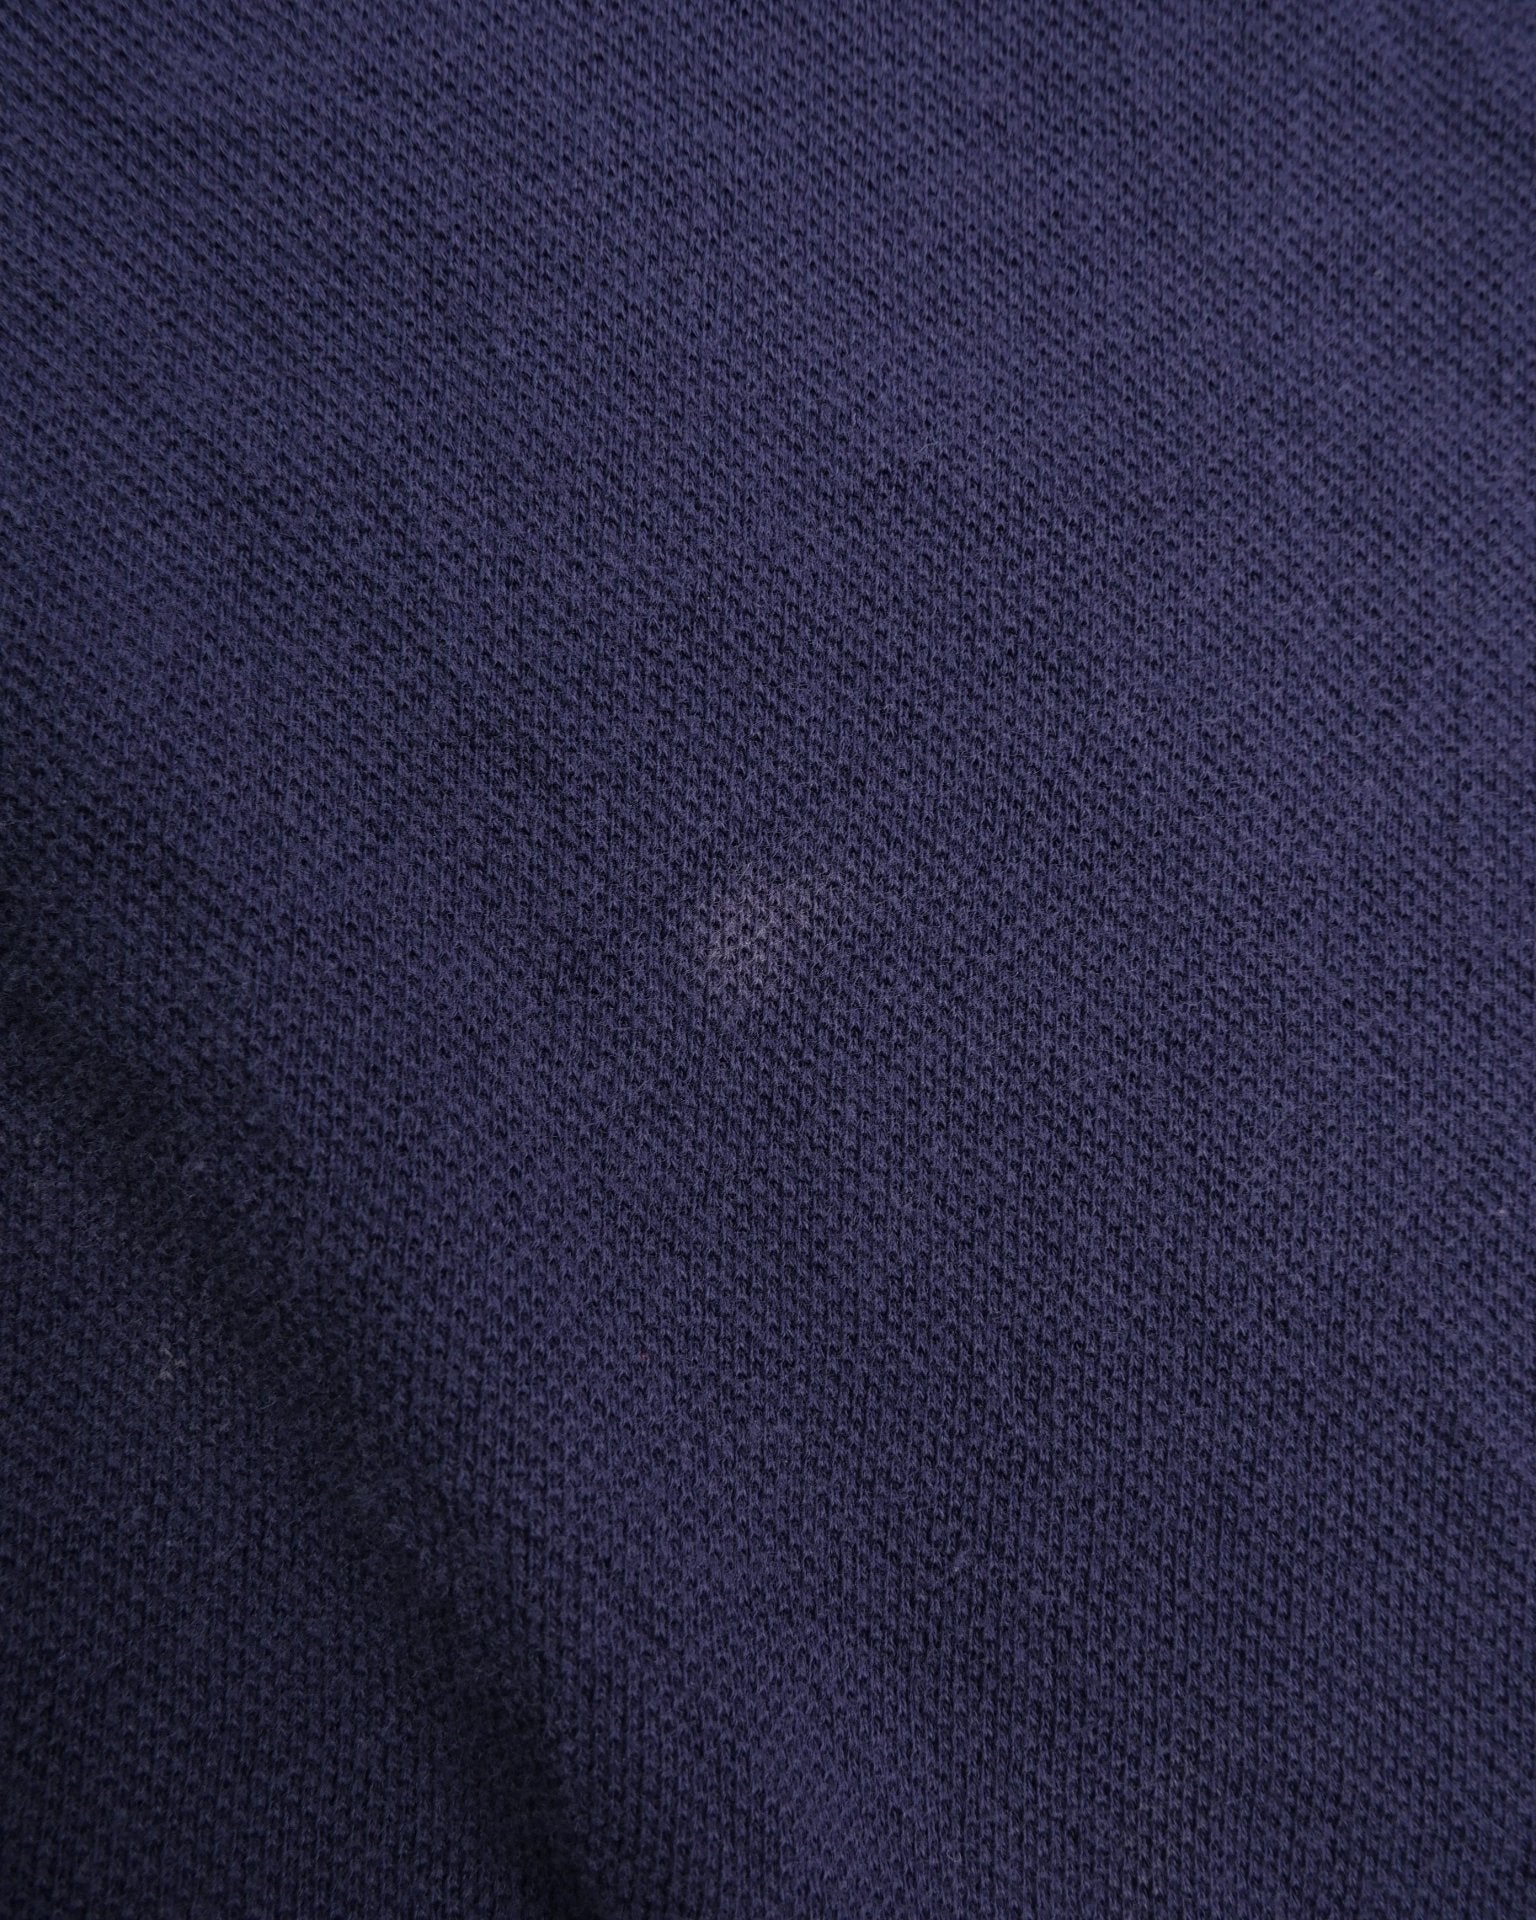 lacoste embroidered Logo navy Polo Shirt - Peeces